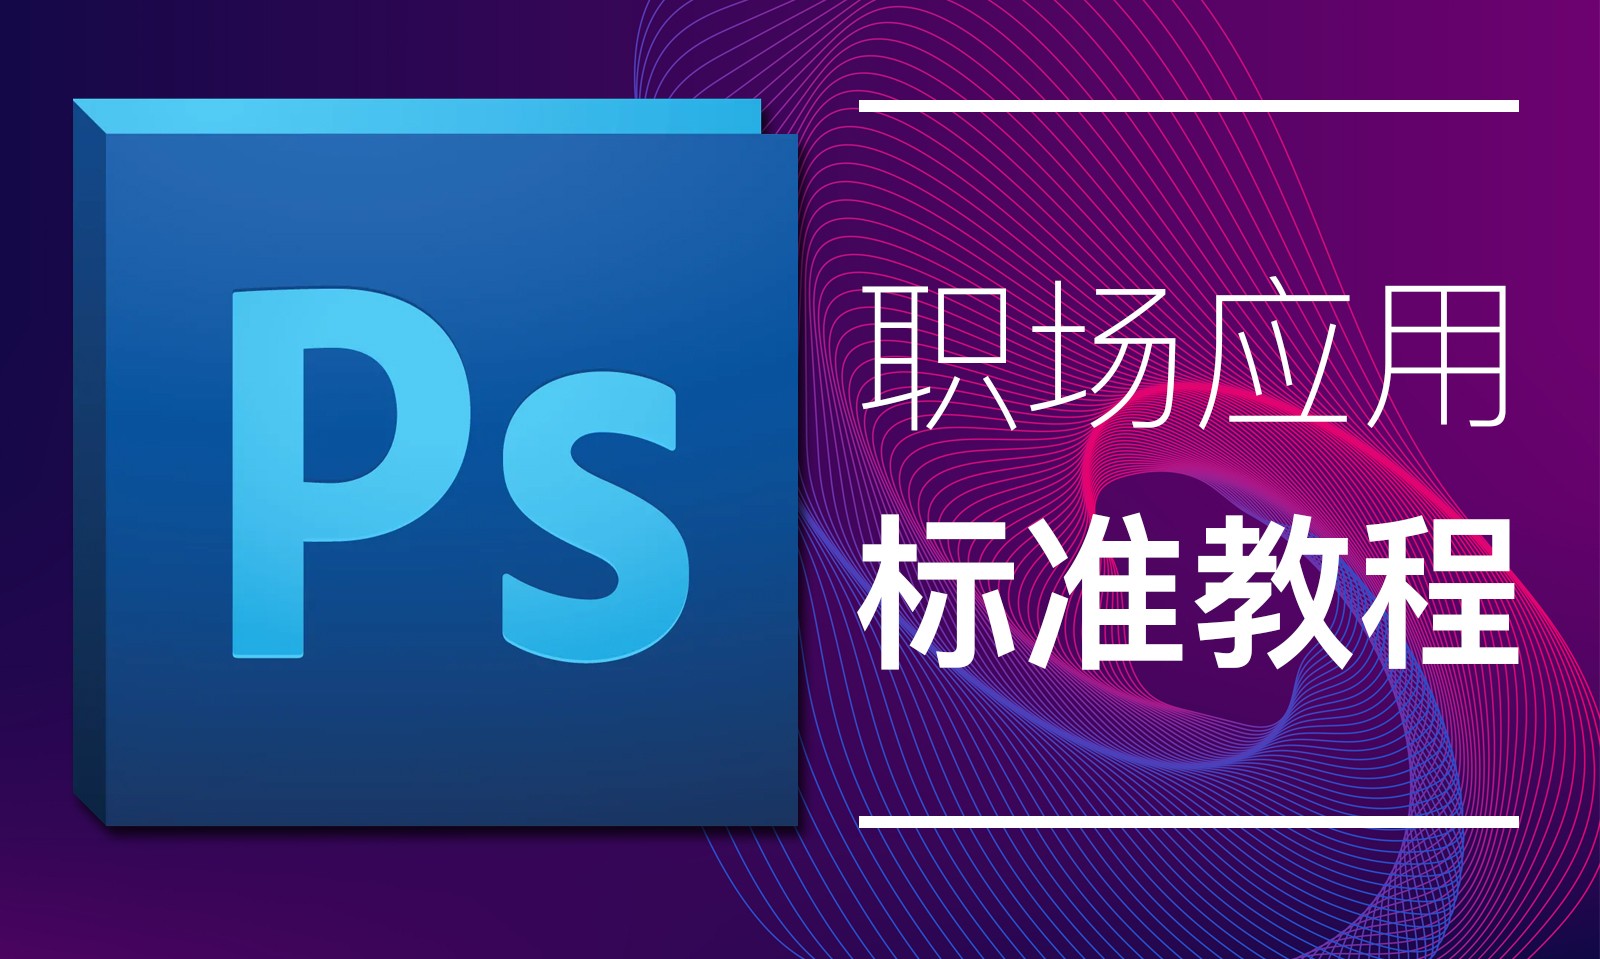 【吴刚大讲堂】Photoshop(PS)软件职场应用技巧标准视频教程